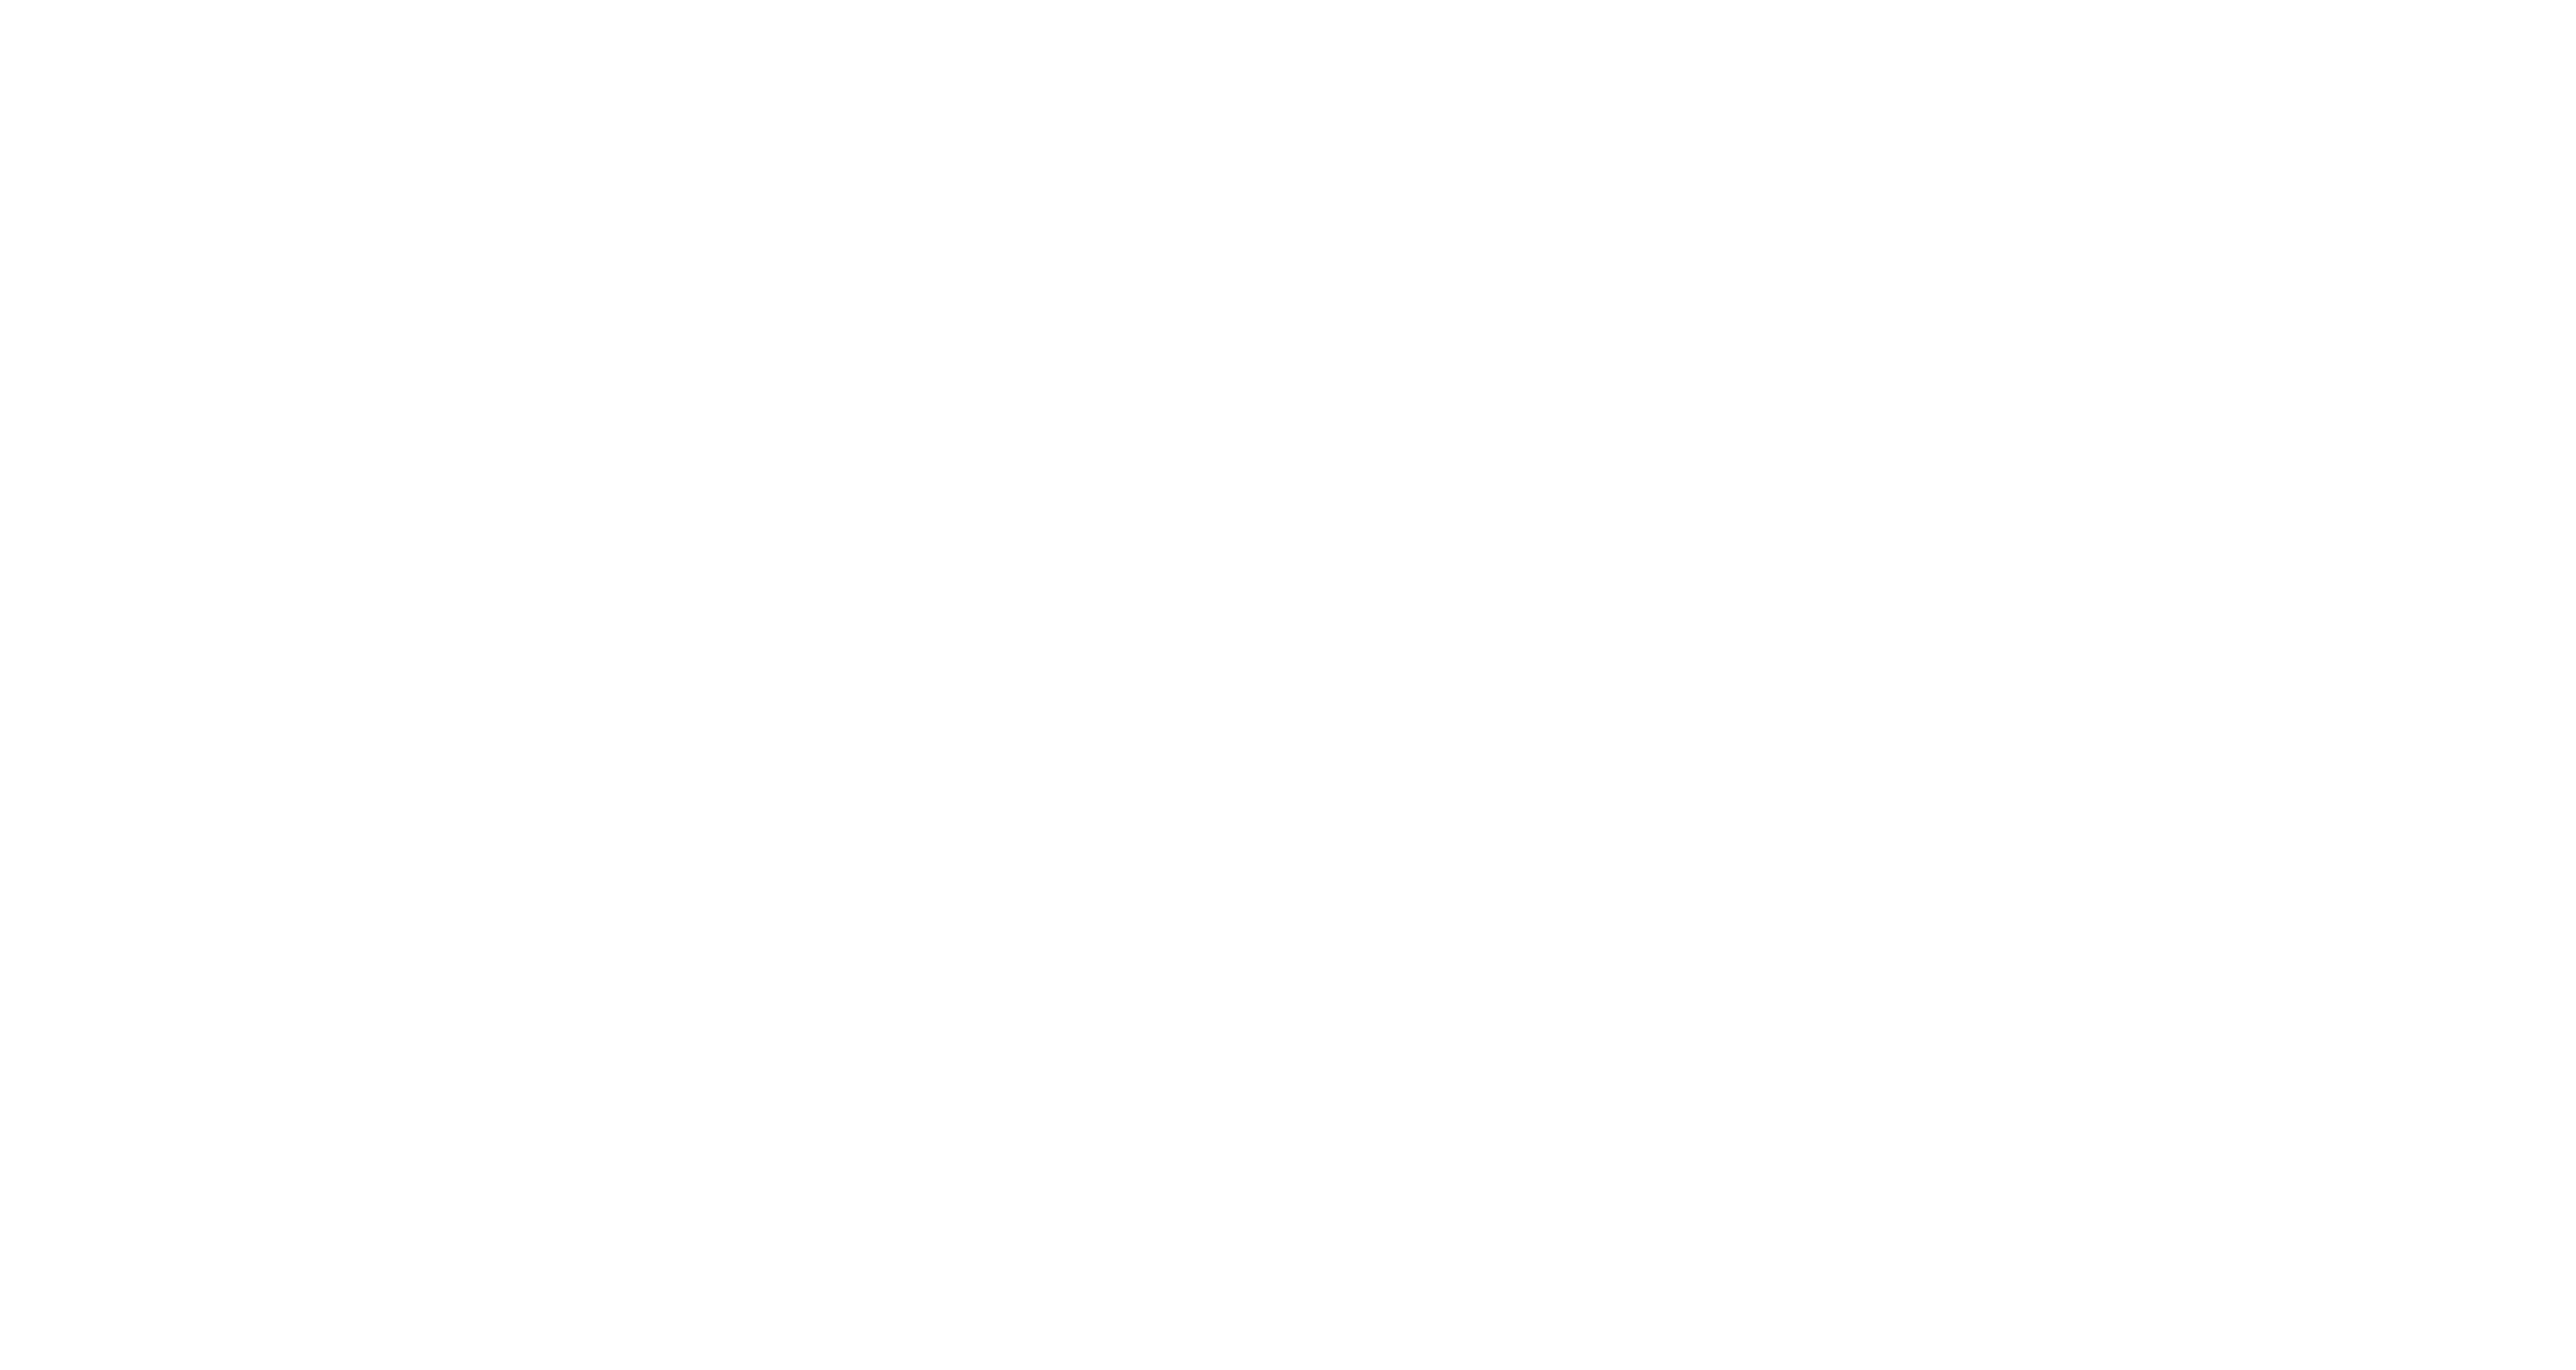 Michael Webert For Delegate